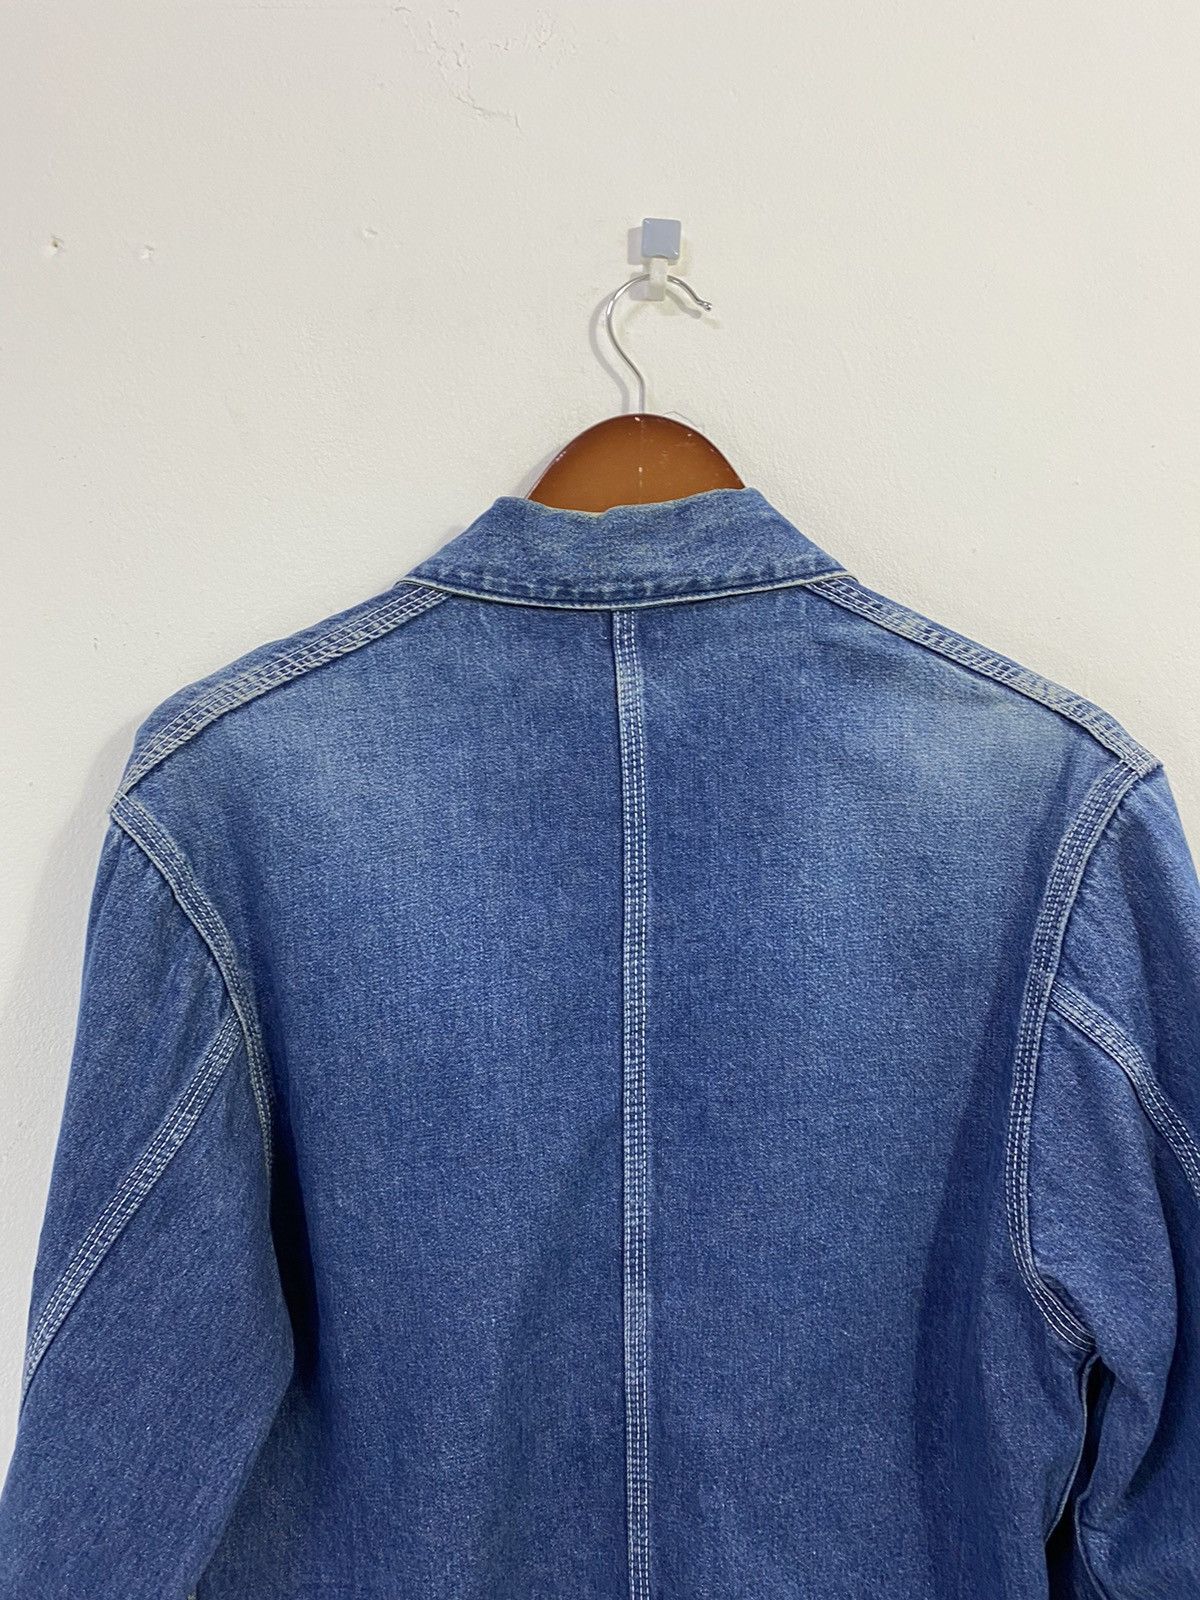 Carhartt Denim Chore Jacket Workwear Destressed Design - 9